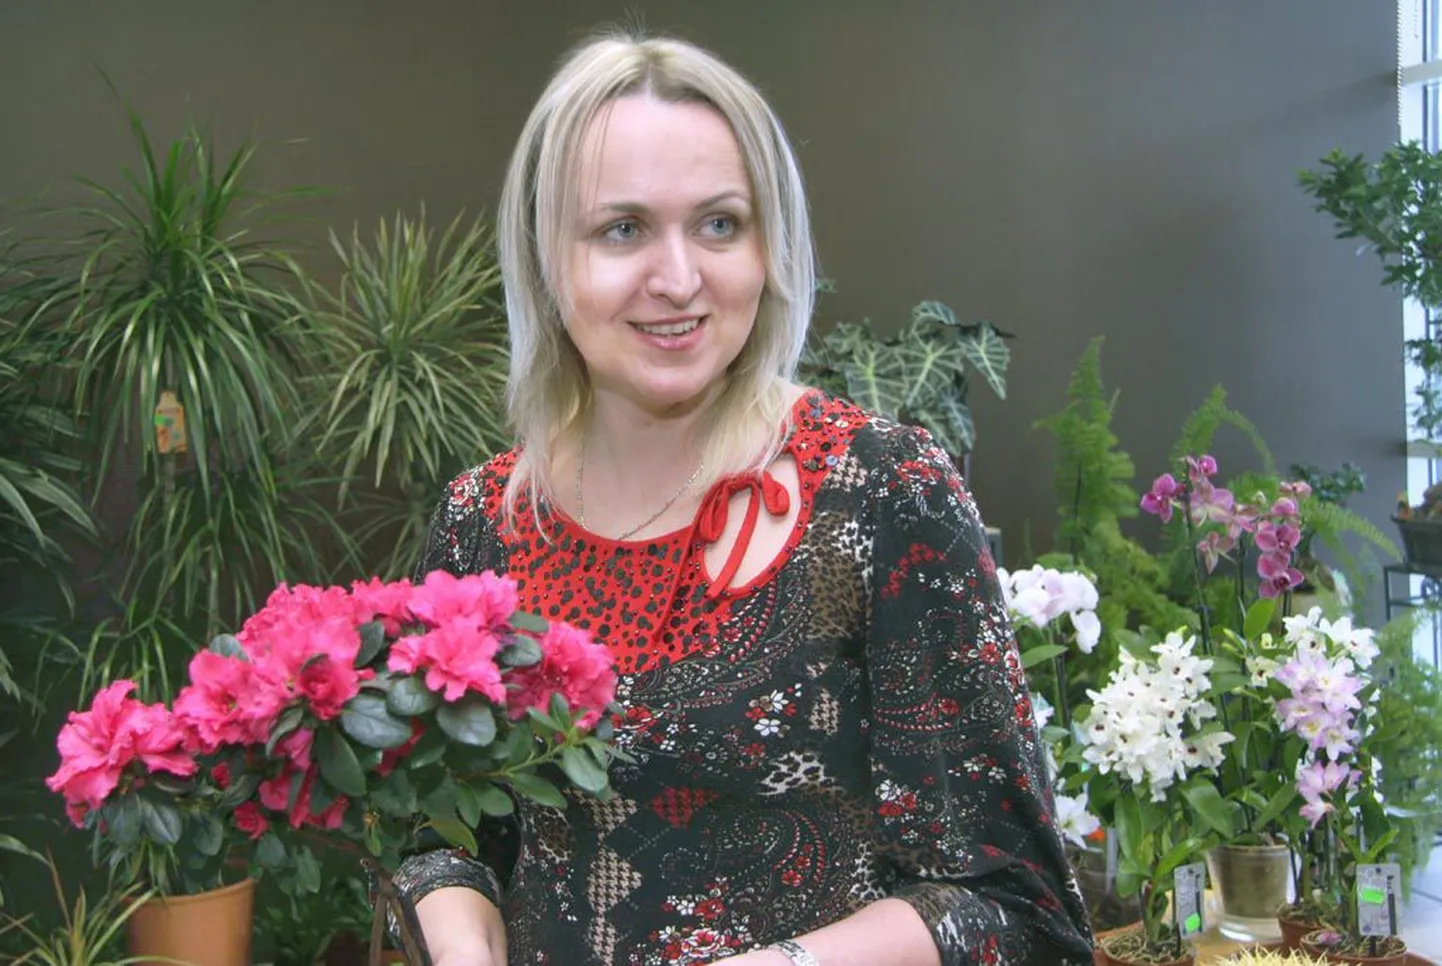 Lillekeskuse juhataja Maire Saksa sõnutsi jagub õige hoolduse korral asalea õiteilu vähemalt kuuks.